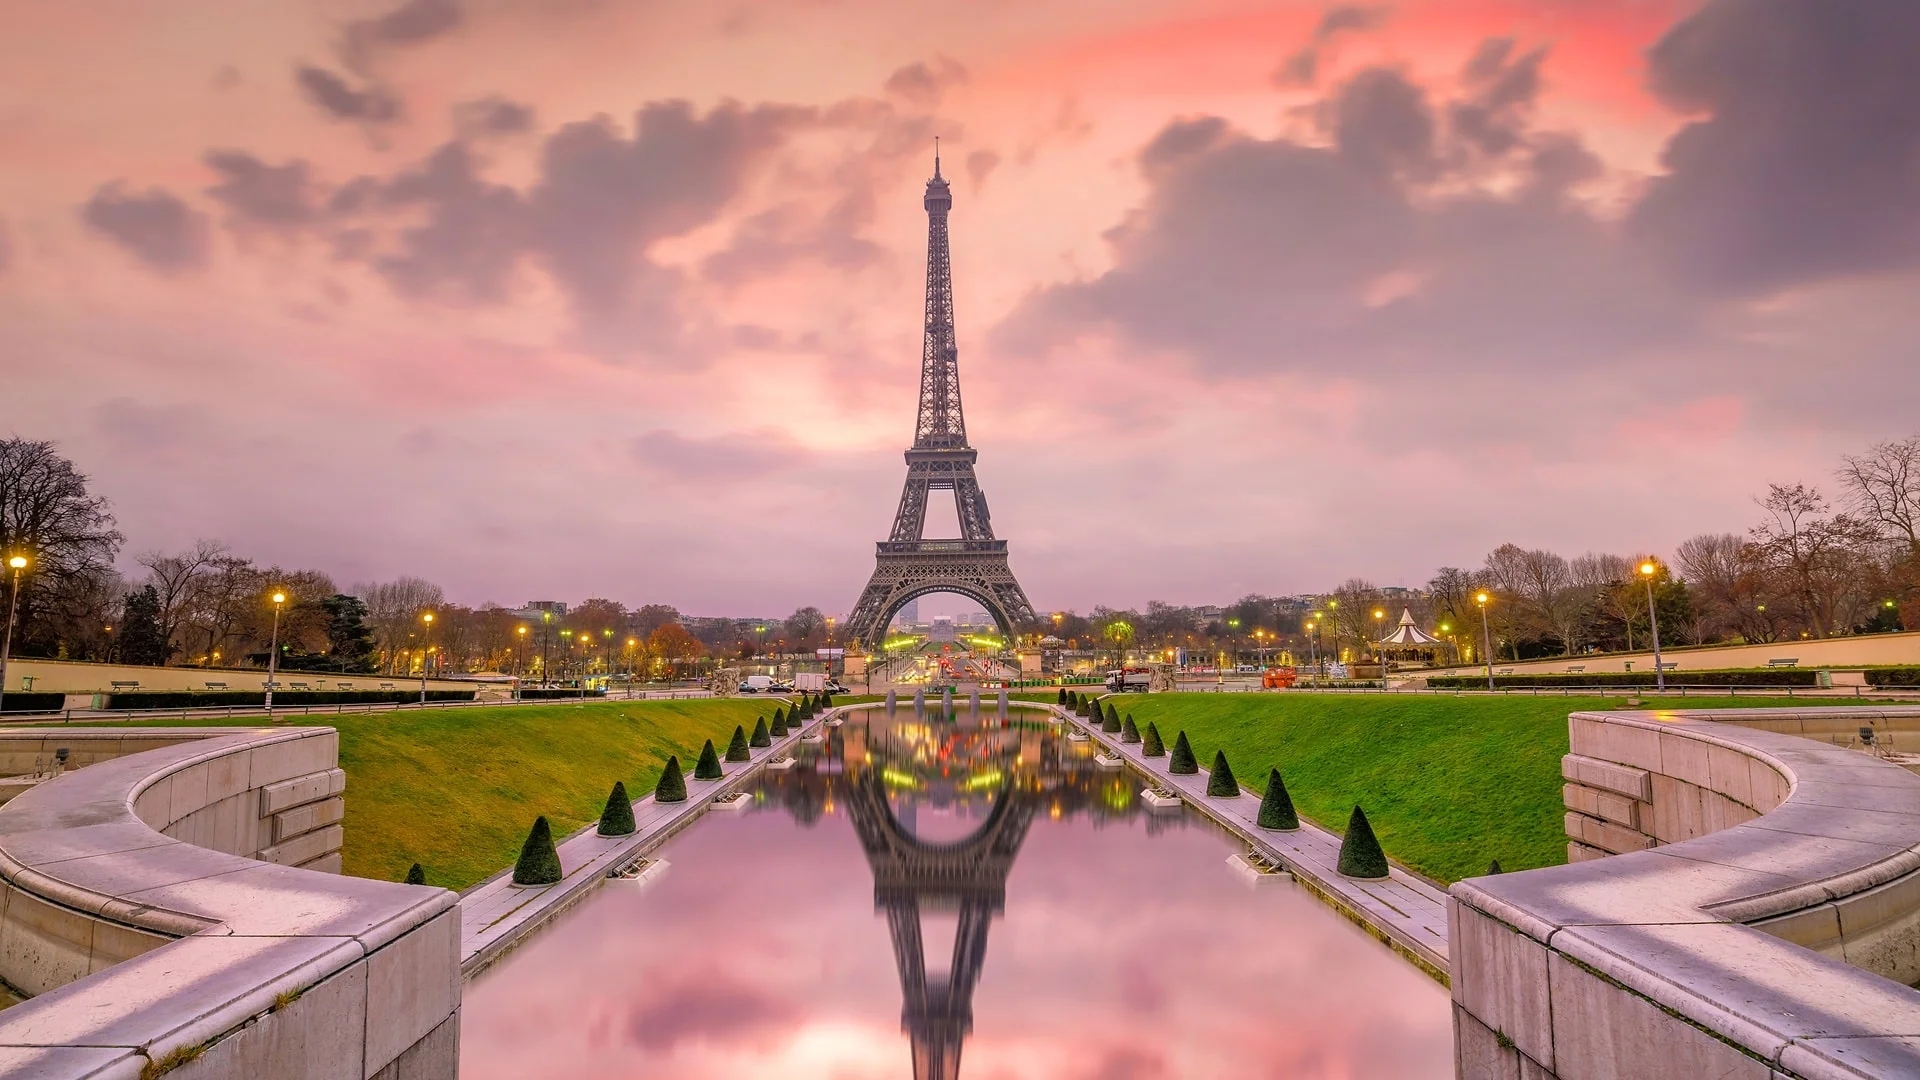 بهترین مکان های عکاسی در پاریس کدامند؟